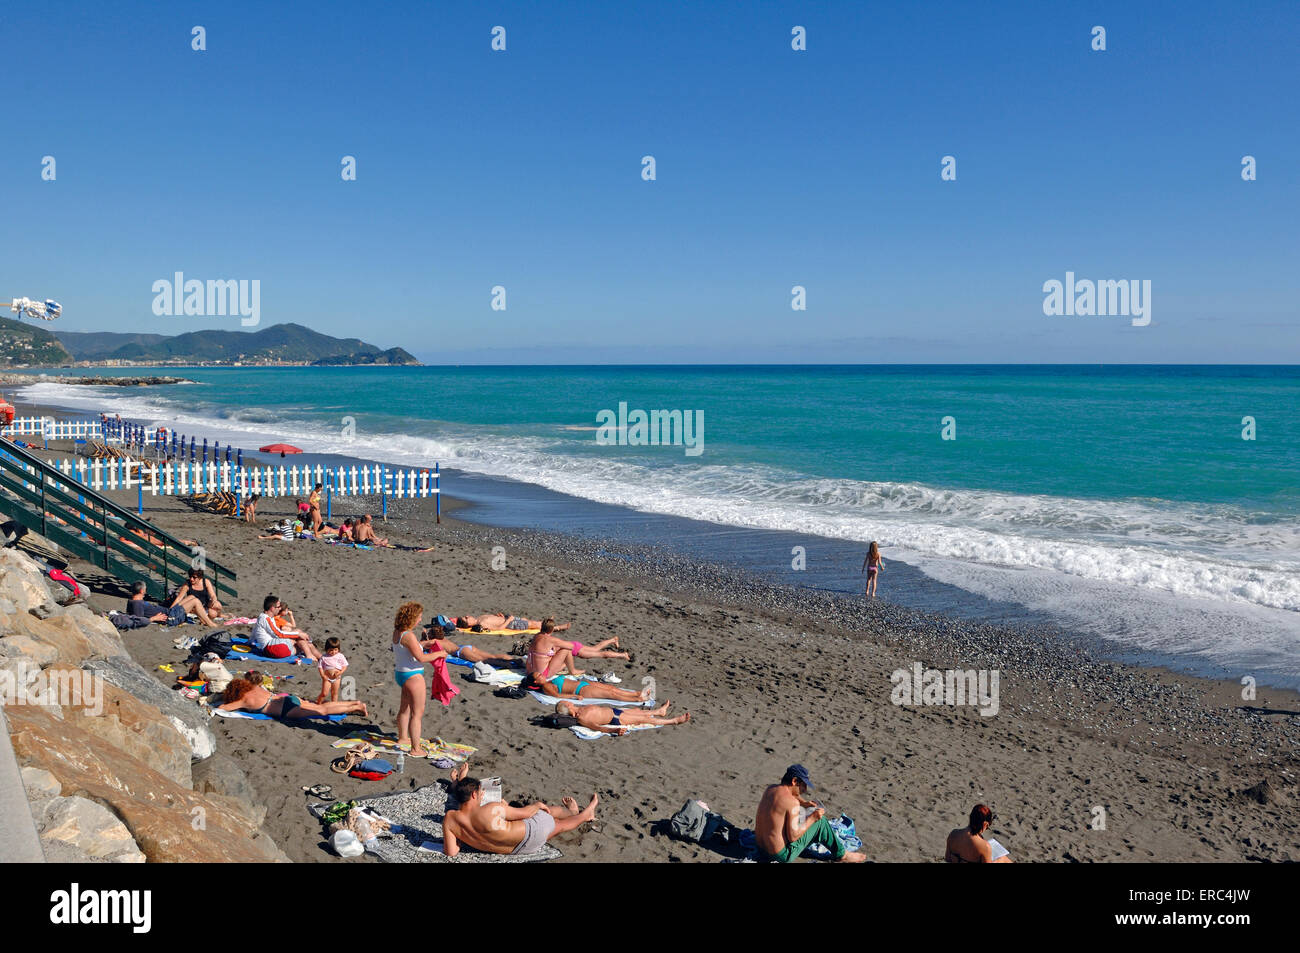 La spiaggia di lavagna immagini e fotografie stock ad alta risoluzione -  Alamy